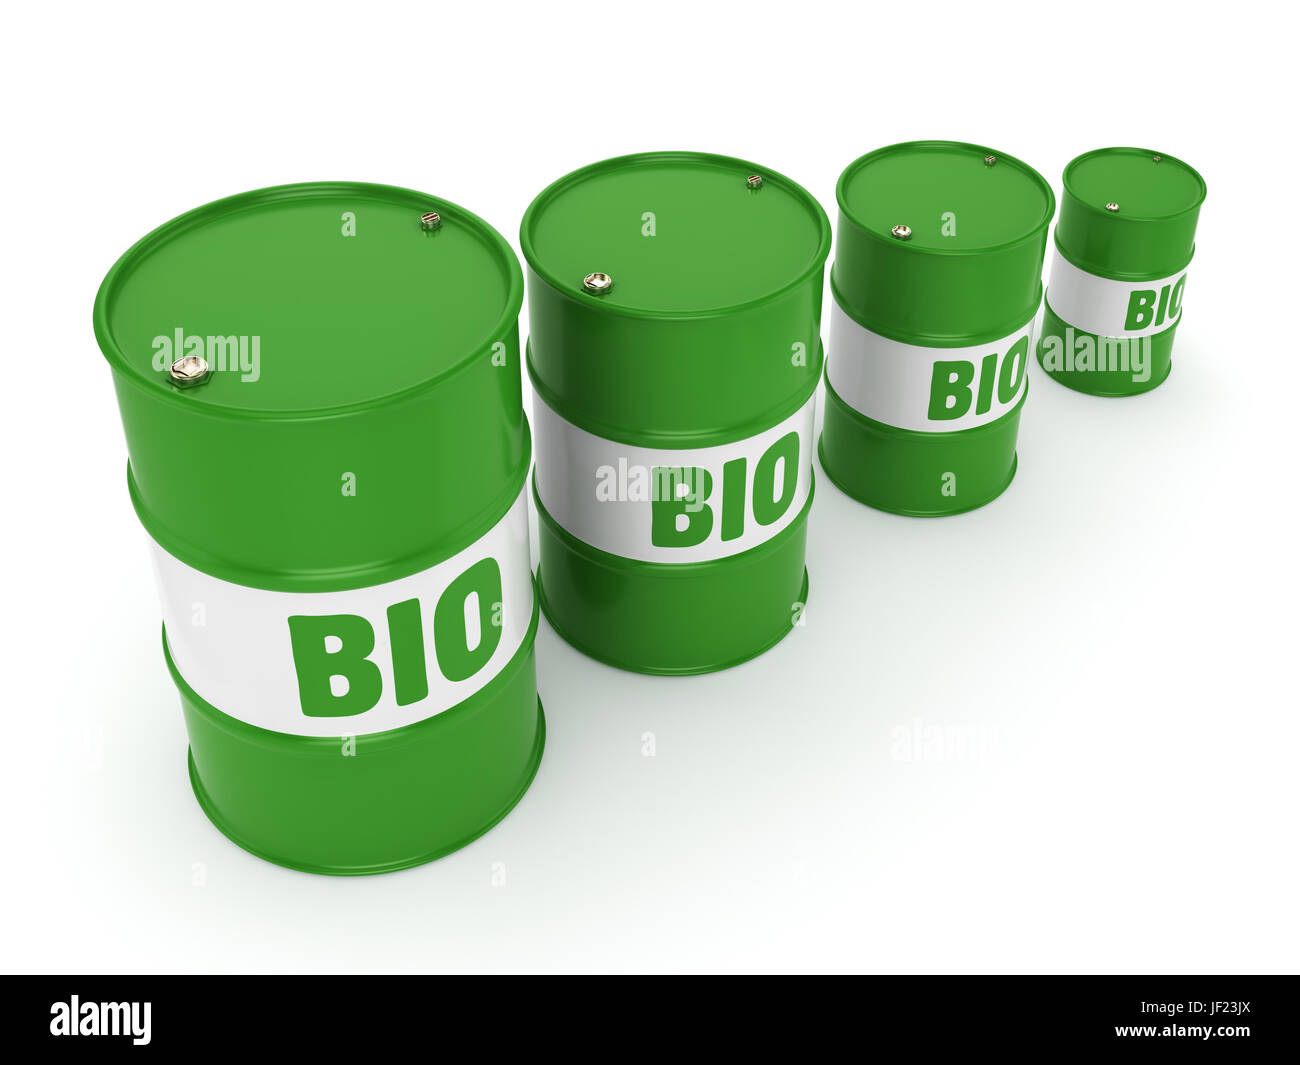 3D rendering barrel of biofuels Stock Photo